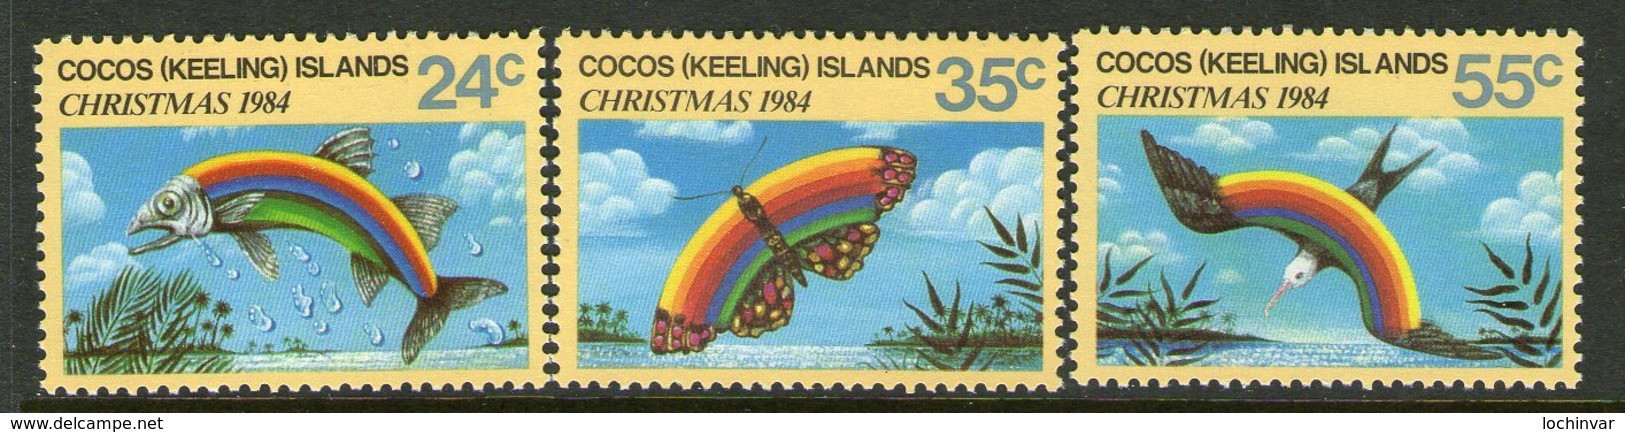 COCOS Is, 1984 XMAS 3 MNH - Cocos (Keeling) Islands